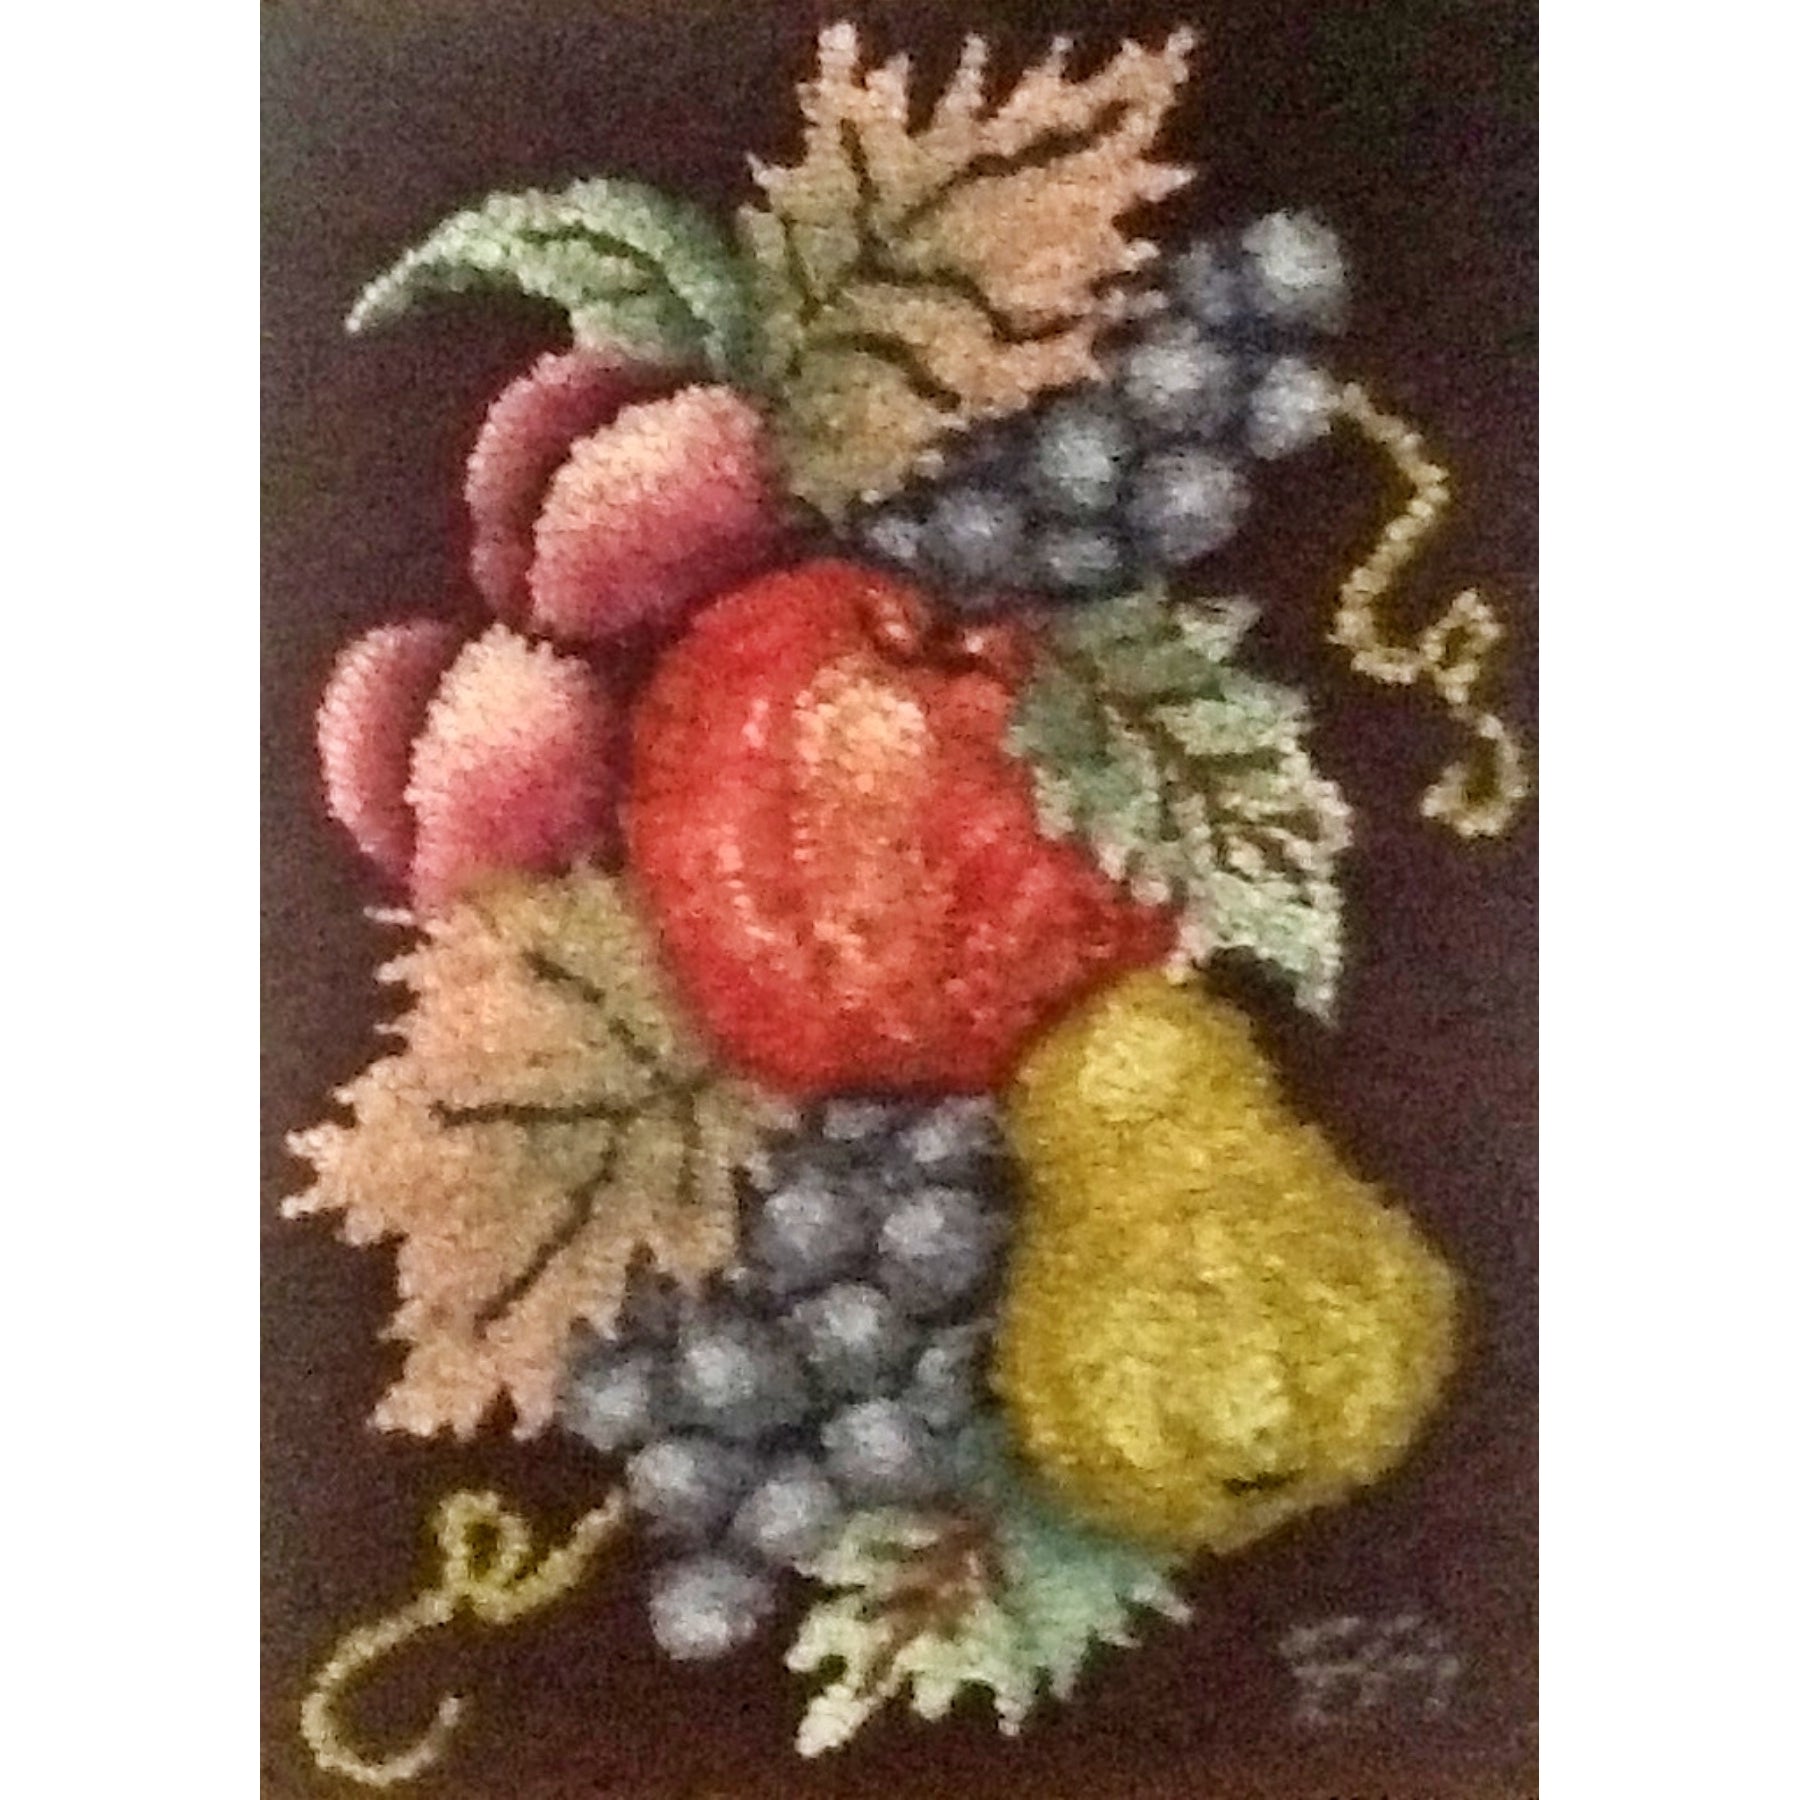 Fruit, rug hooked by Brenda Anderson